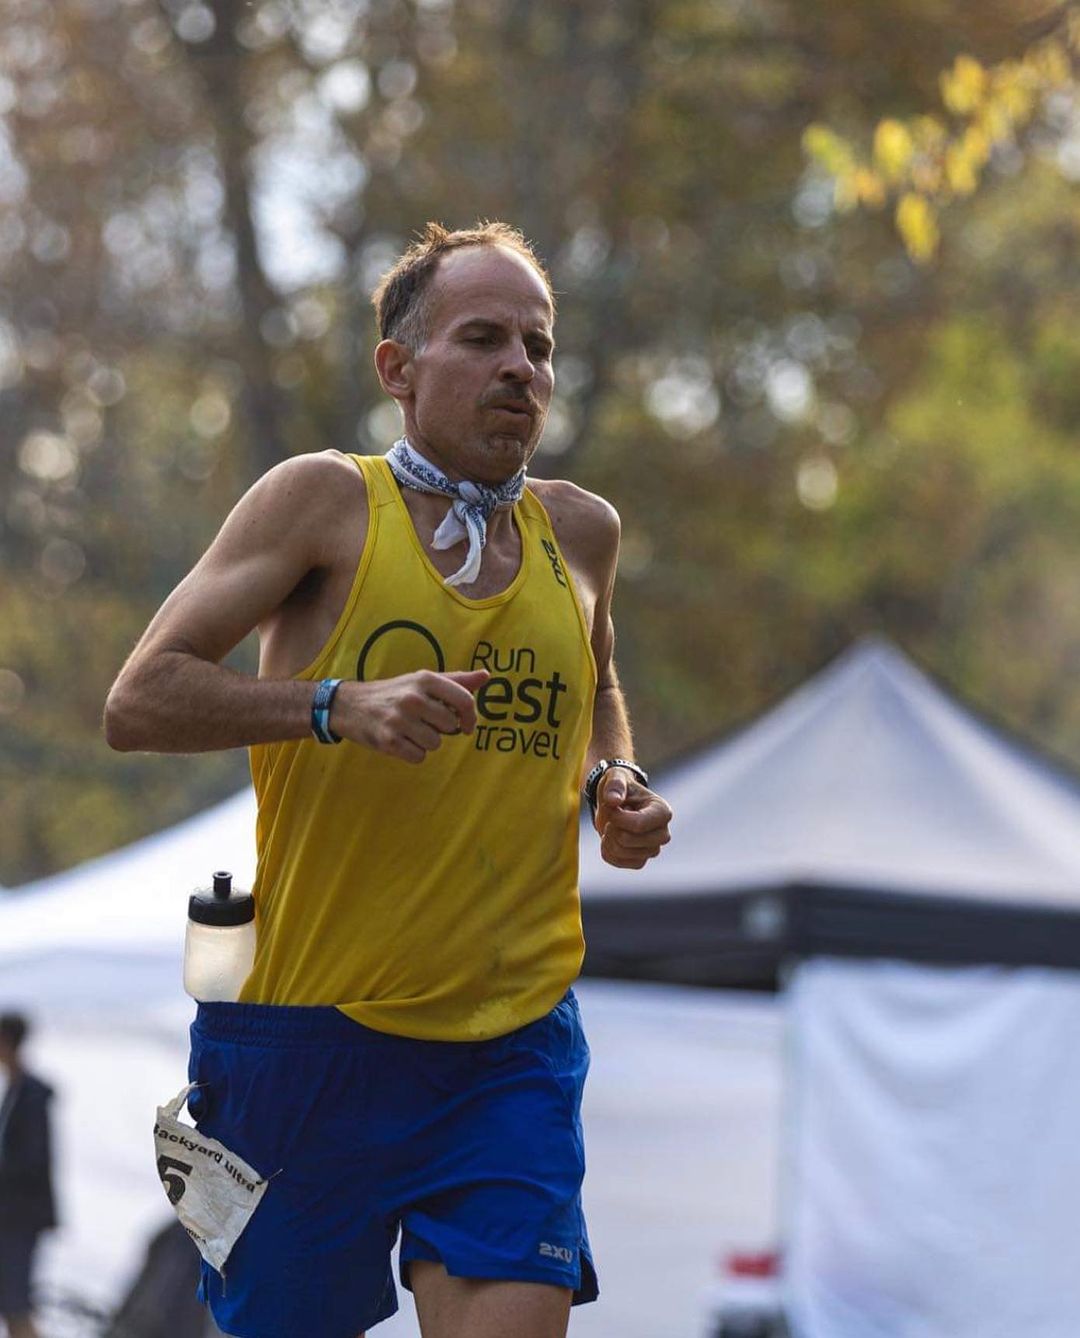 Έτρεξε 450 χιλιόμετρα σε 4.5 μέρες, στο φινάλε έβλεπε δέντρα να του μιλάνε: Απίστευτο ρεκόρ από Καναδό 